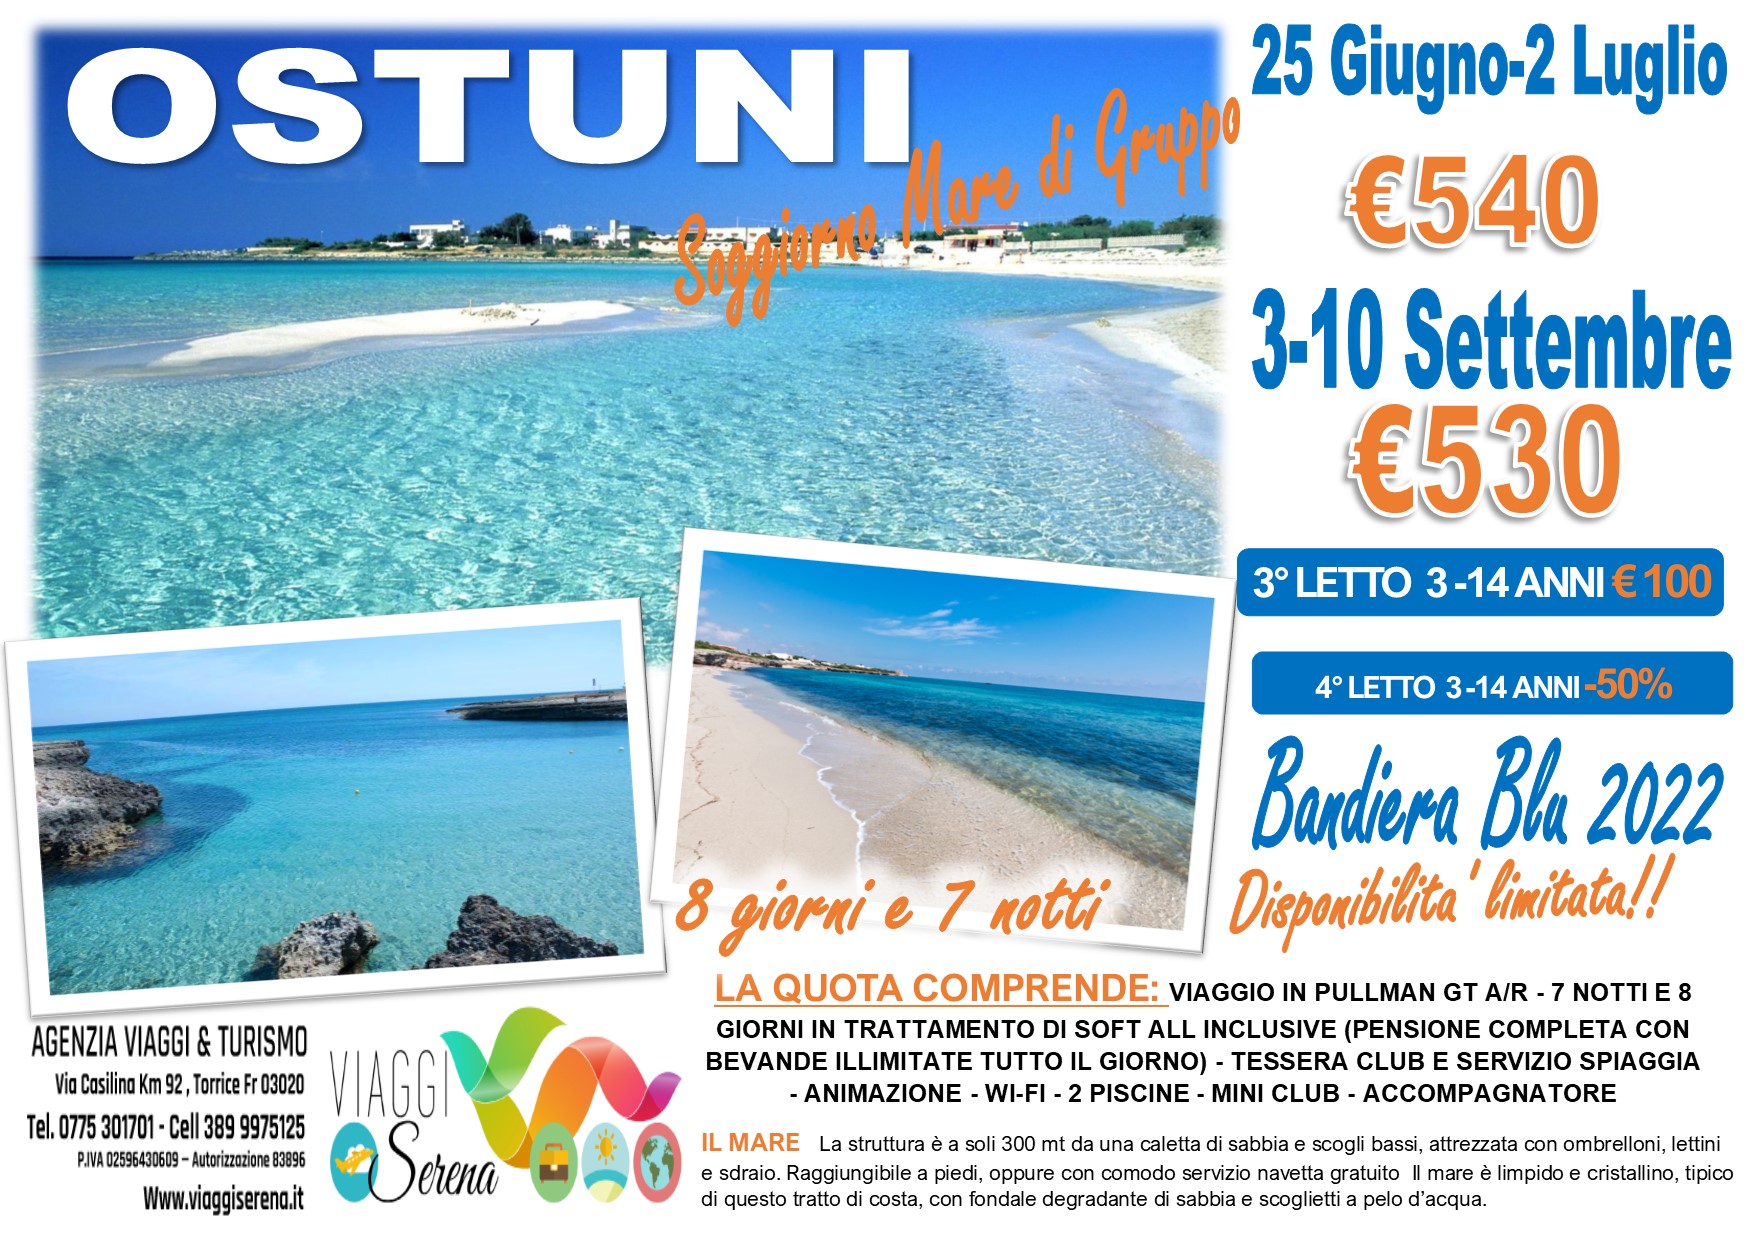 Viaggi di Gruppo: Soggiorno Mare “Villaggio Plaia” Ostuni 3 -10 Settembre €530,00